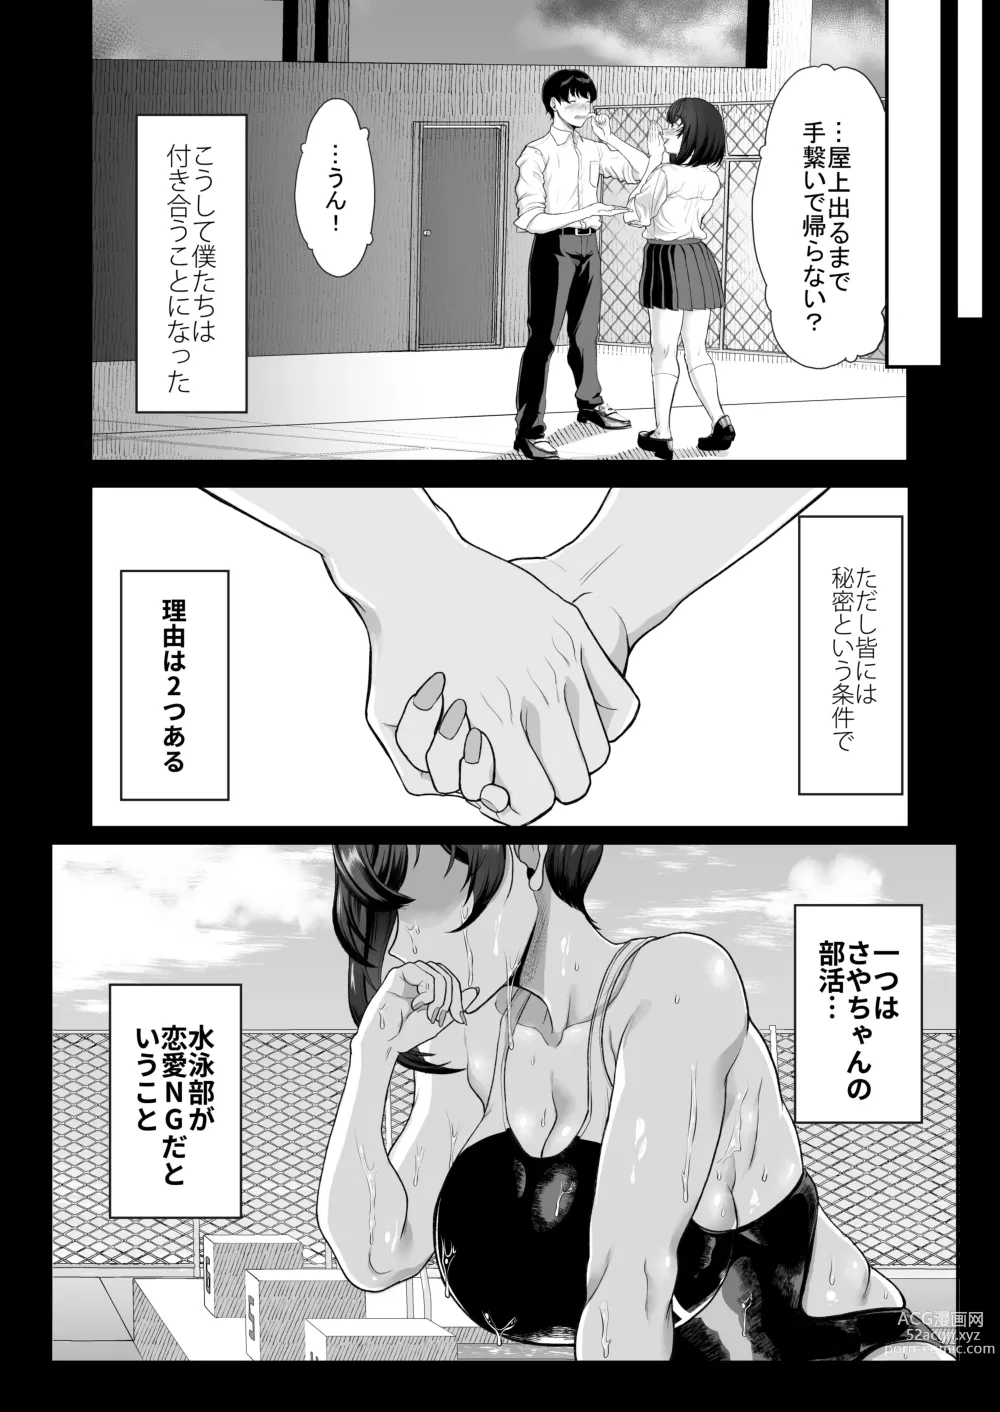 Page 5 of doujinshi Suieibuno kanojoga shinyuuwo kobamenakunaru katei